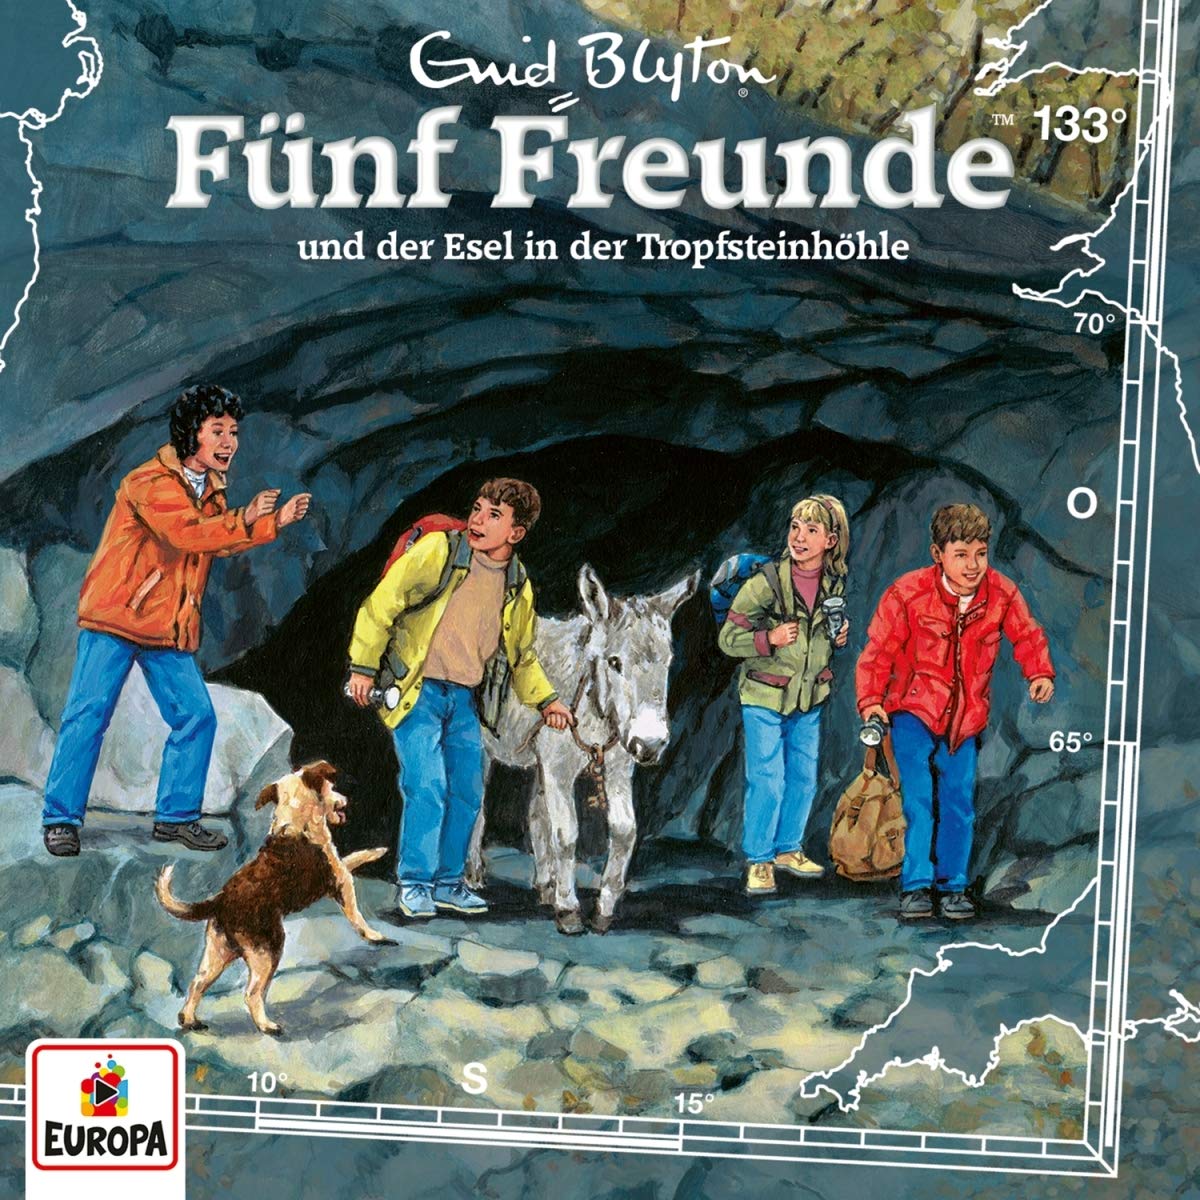 Fünf Freunde: Fünf Freunde und der Esel in der Tropfsteinhöhle